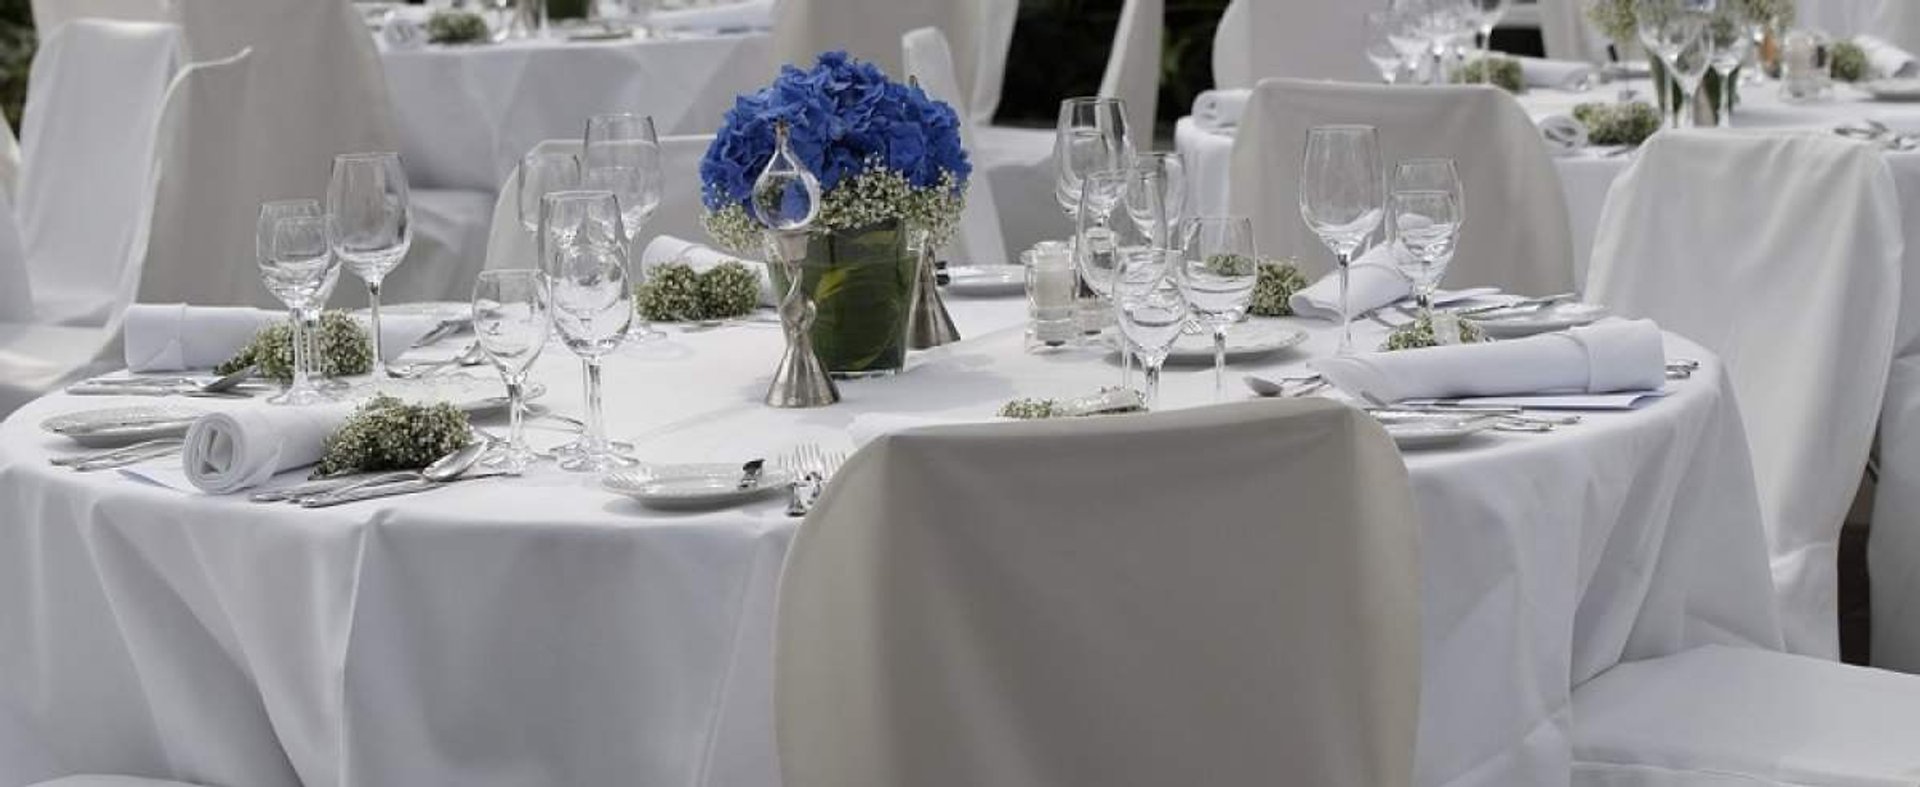 Czy należy radykalnie ograniczyć liczbę gości weselnych?